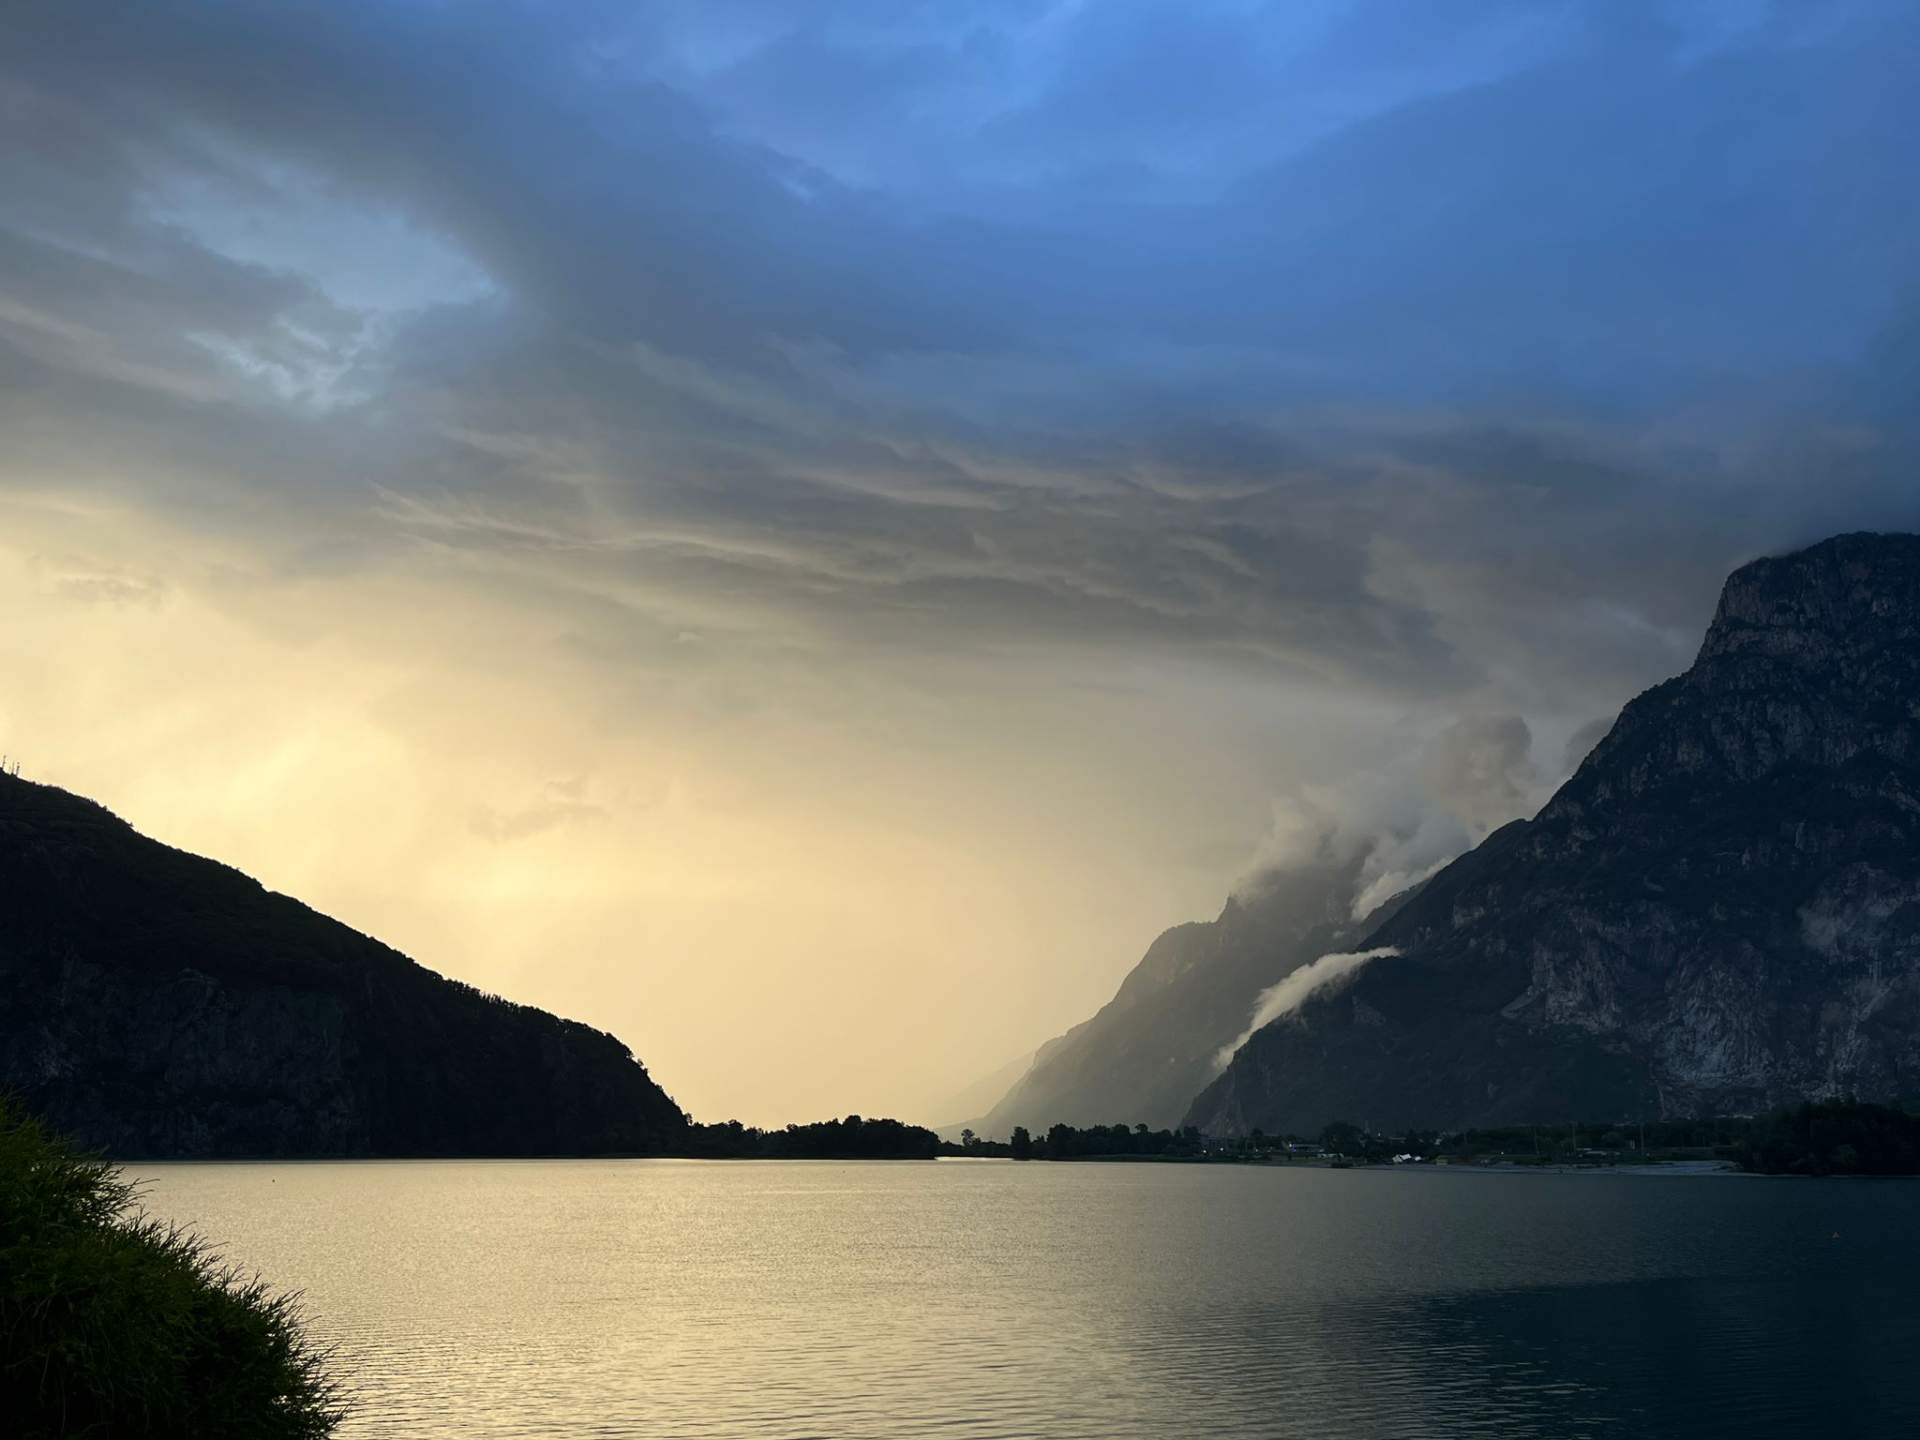 Abb. 3: Gewitterstimmung über dem Lago di Mezzola